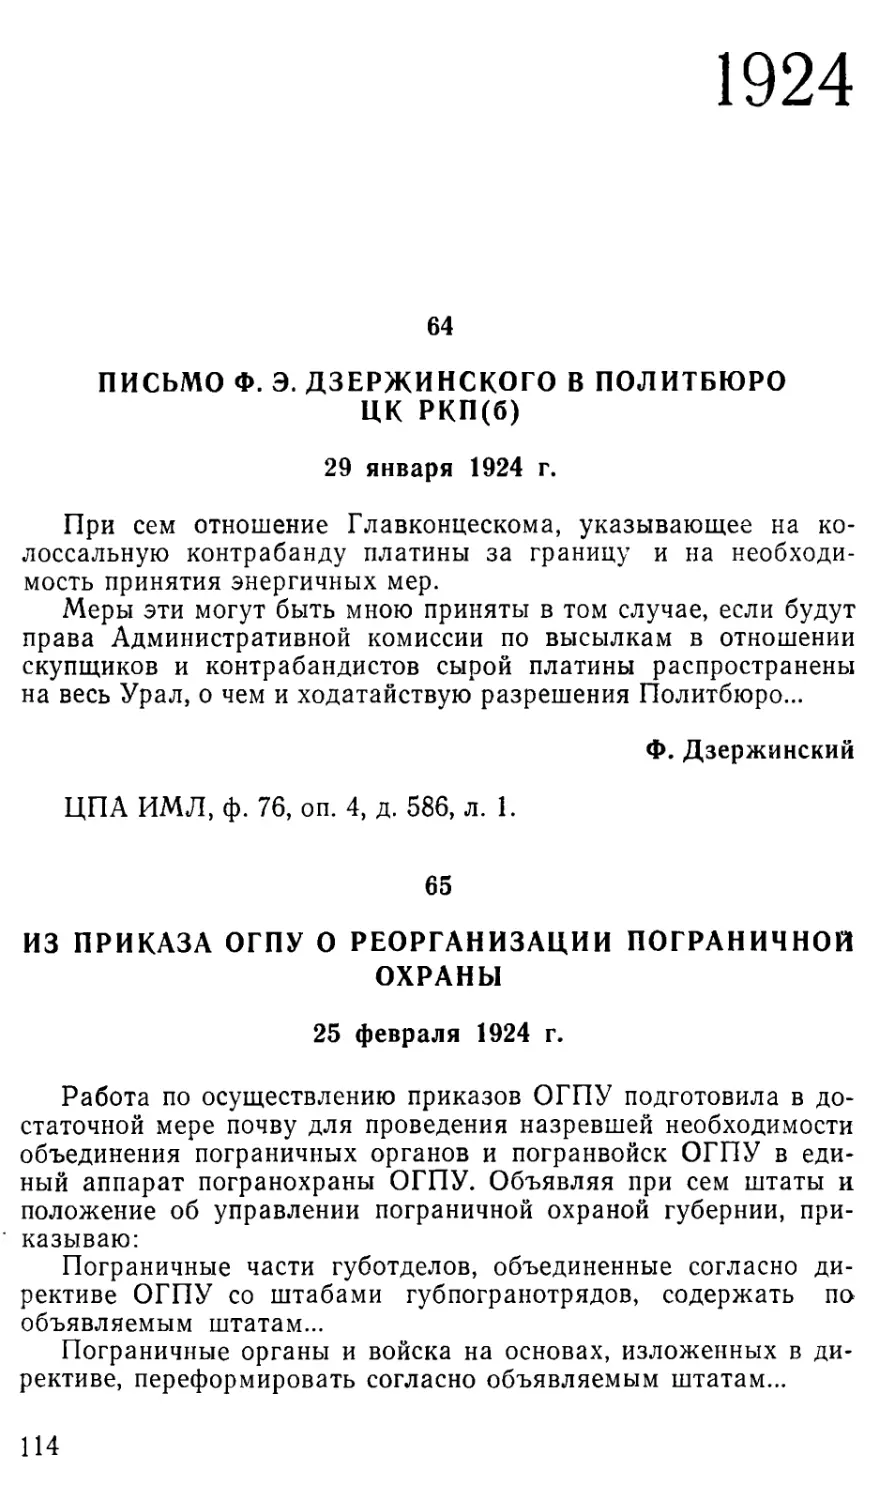 1924
65. Из приказа ОГПУ о реорганизации пограничной охраны. 25 февраля 1924 г